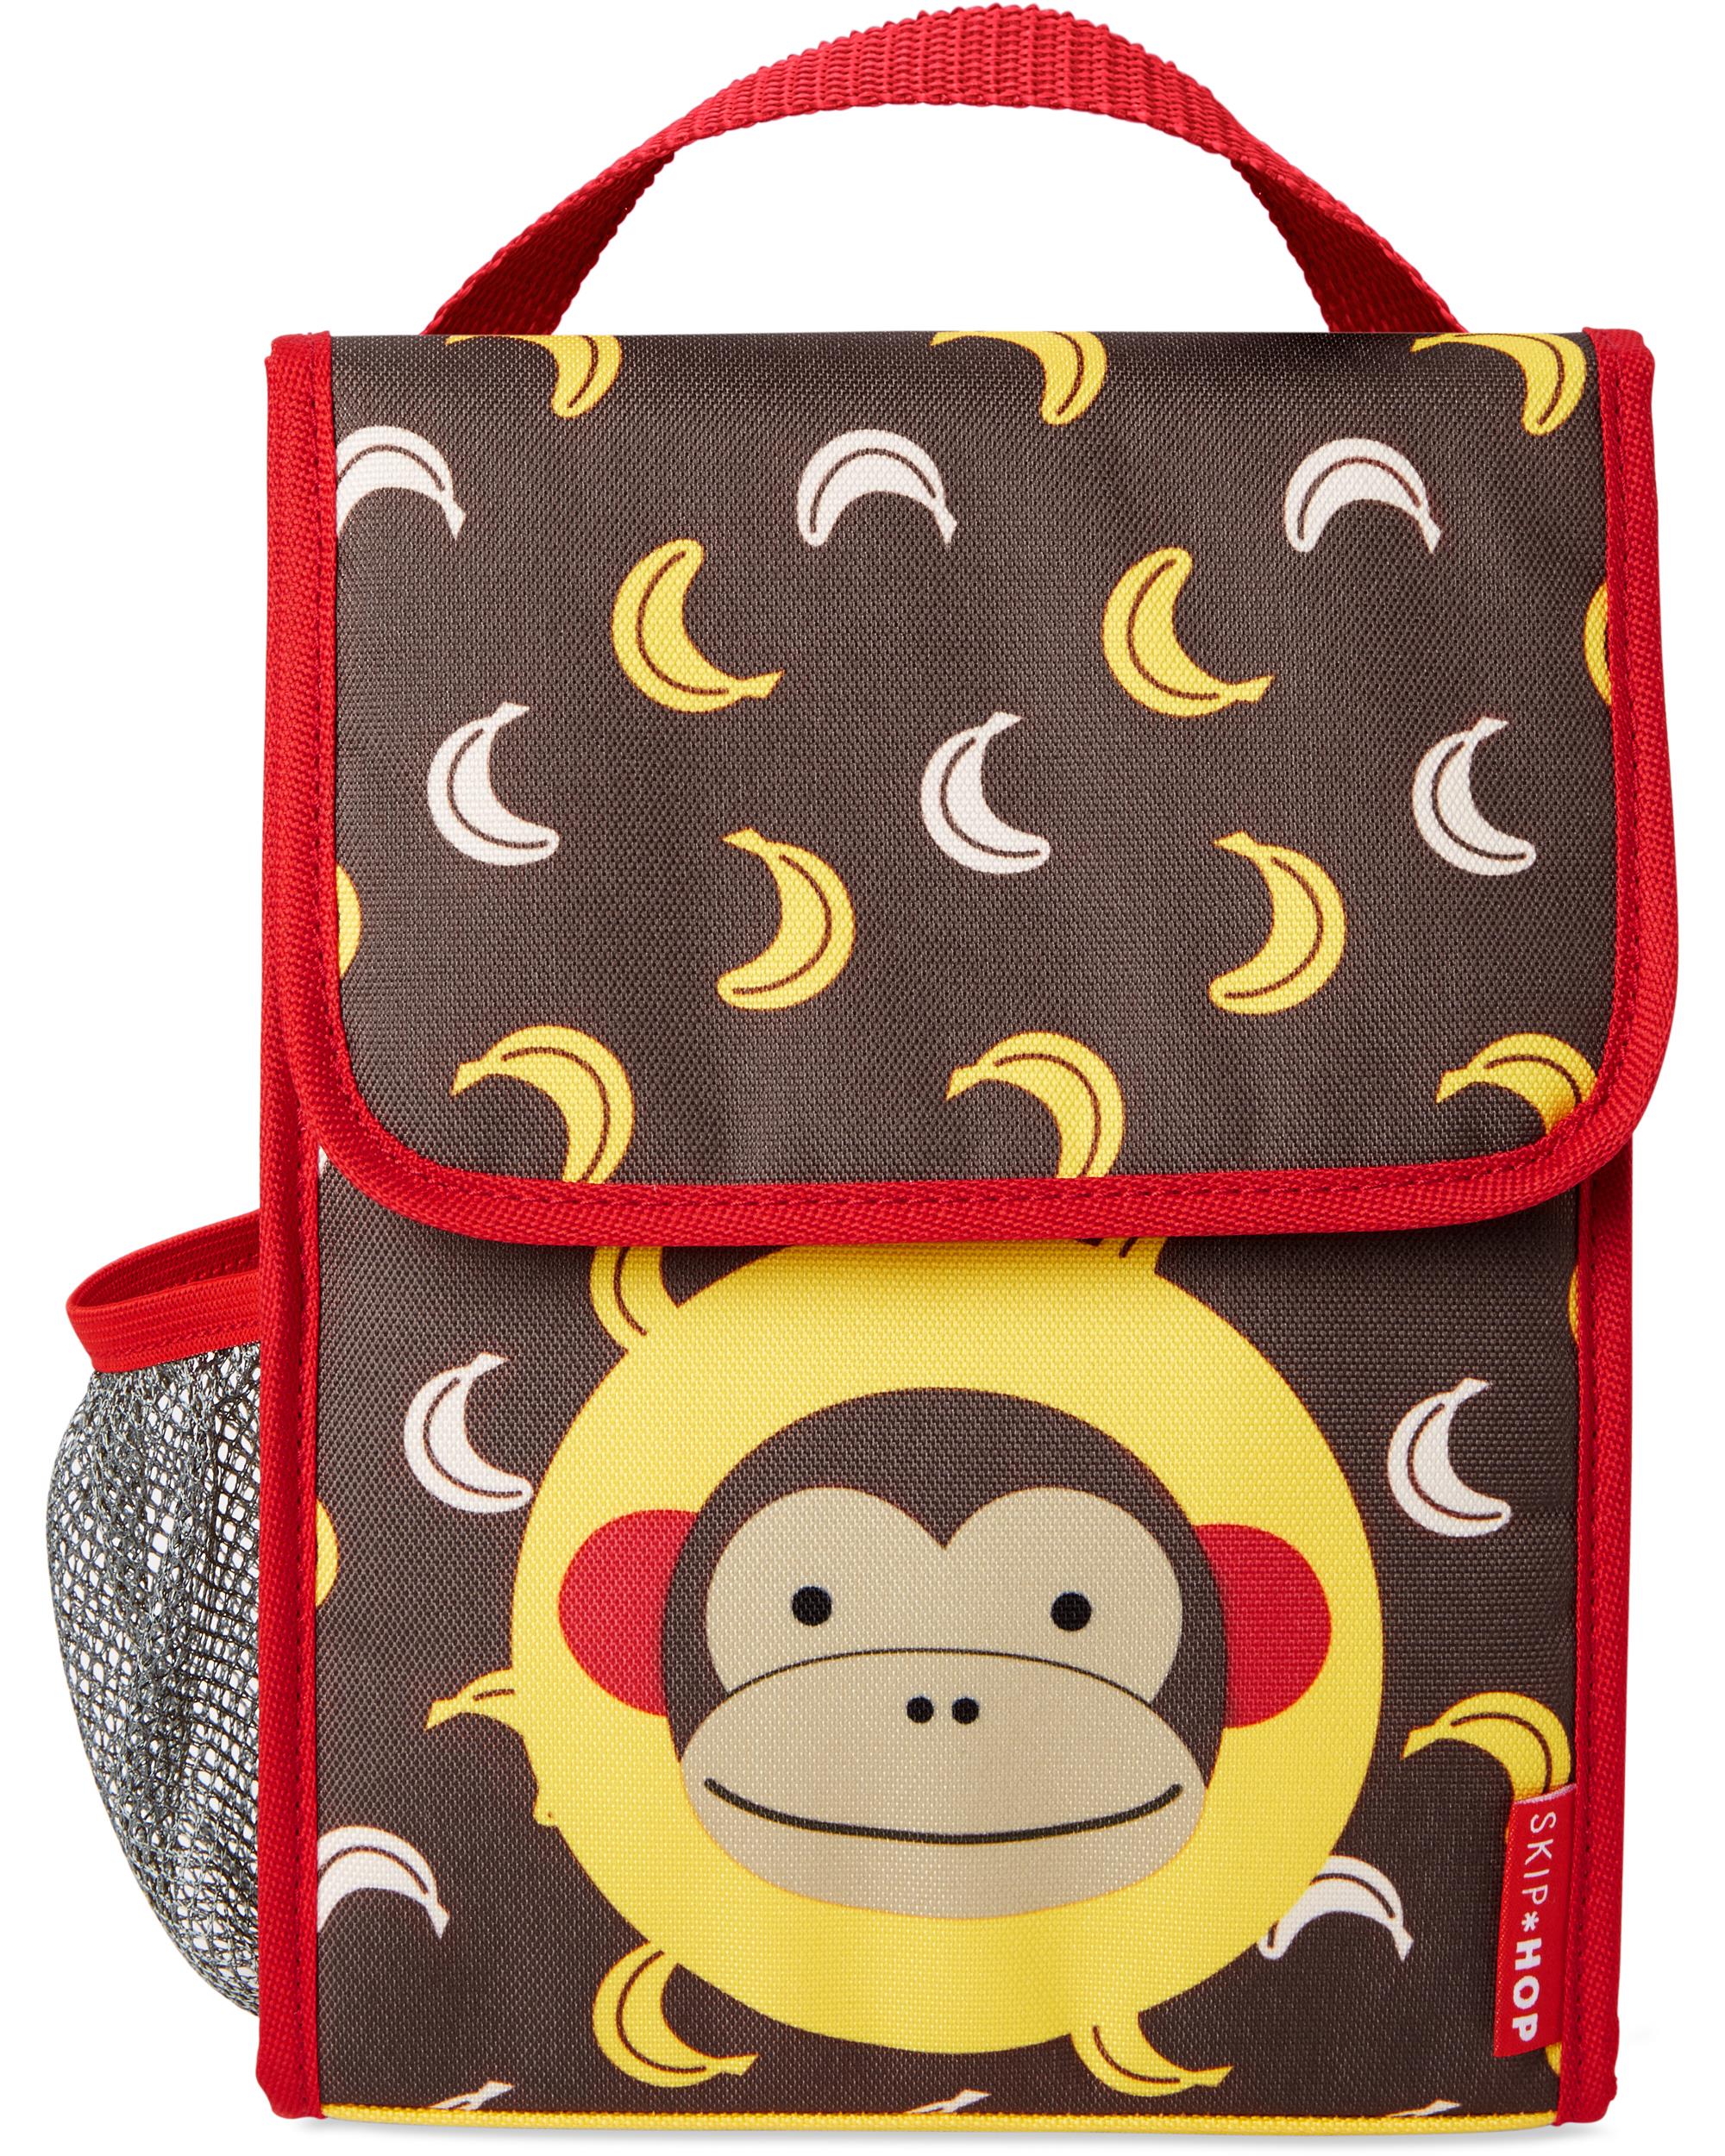 skip-hop-zoo-lunch-bag-monkey